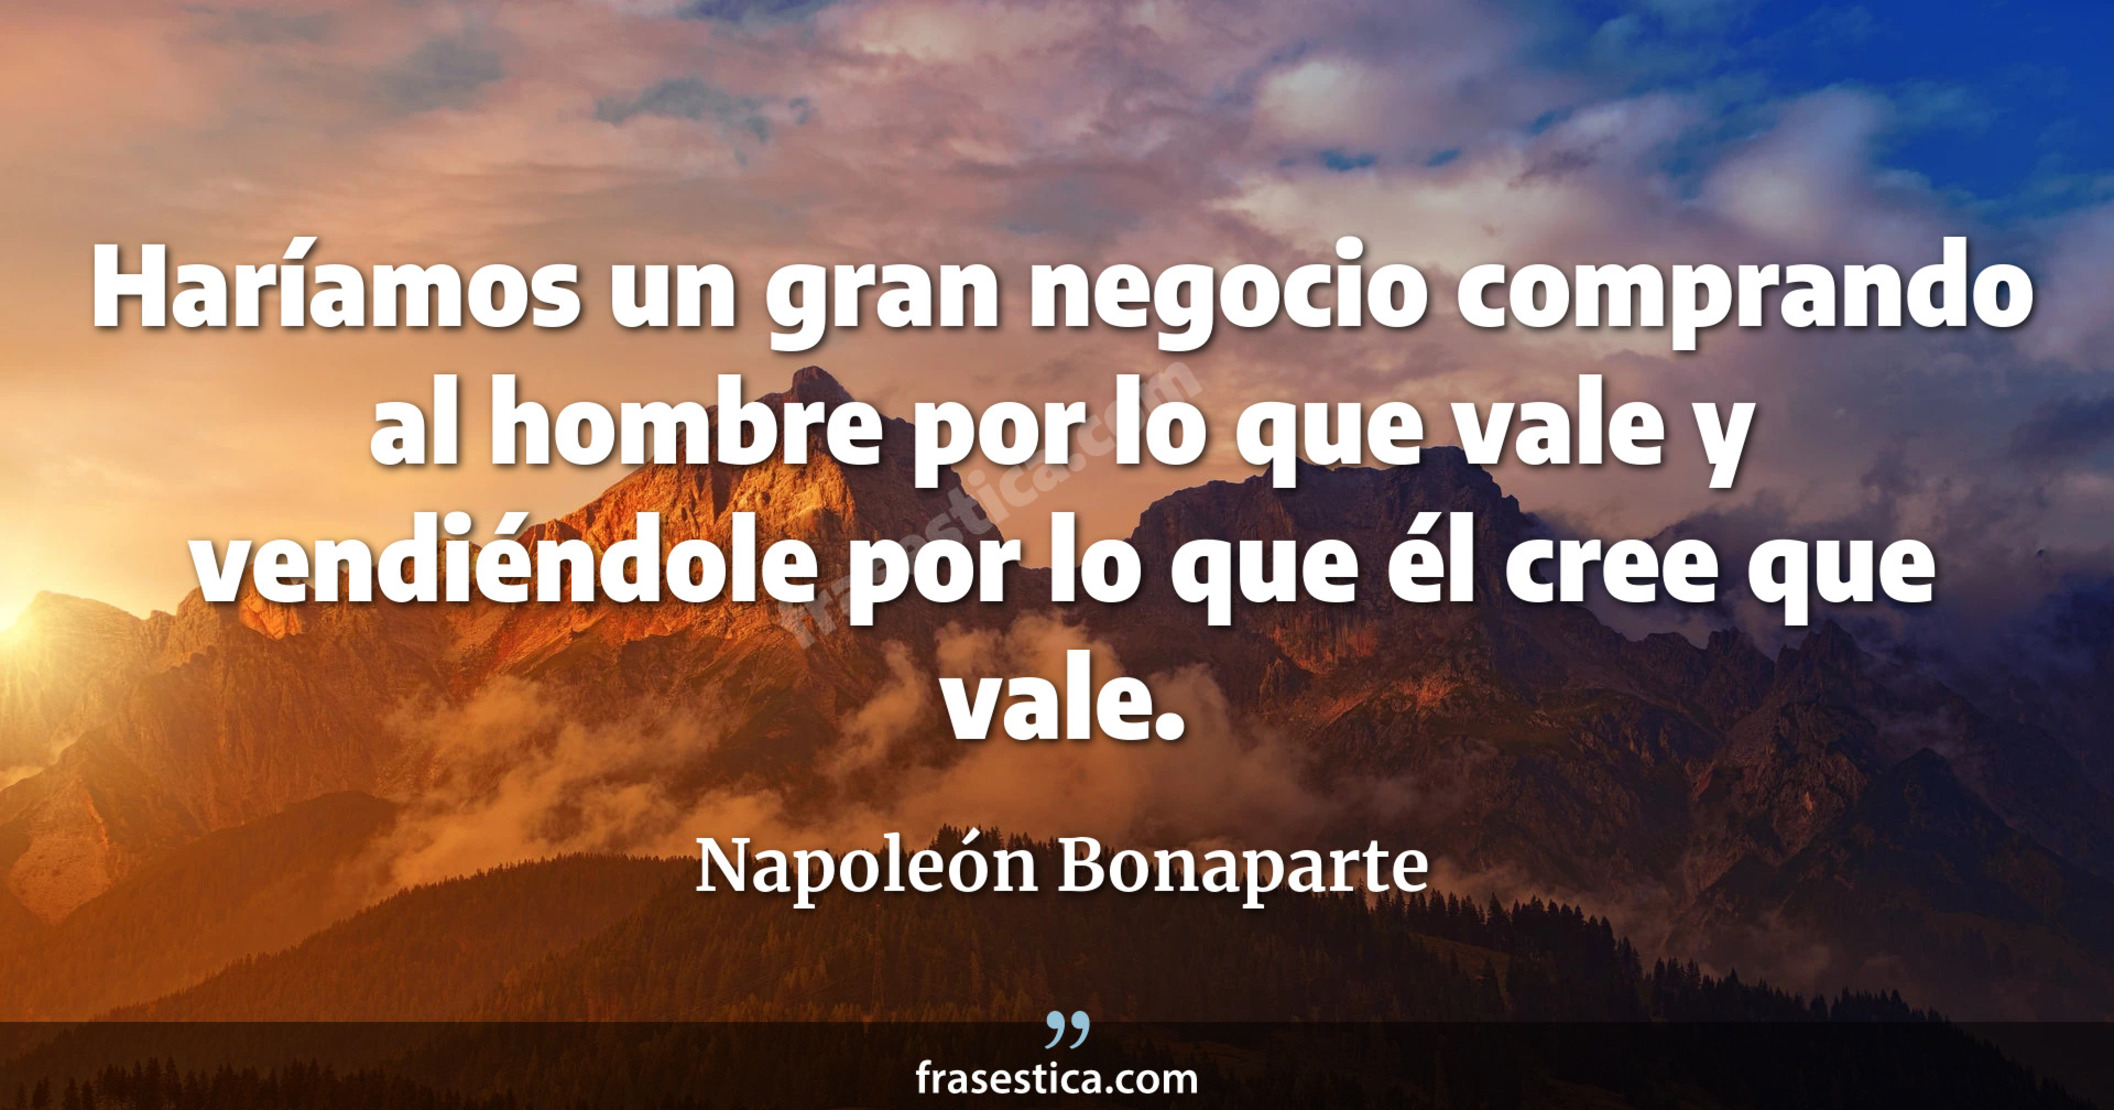 Haríamos un gran negocio comprando al hombre por lo que vale y vendiéndole por lo que él cree que vale. - Napoleón Bonaparte